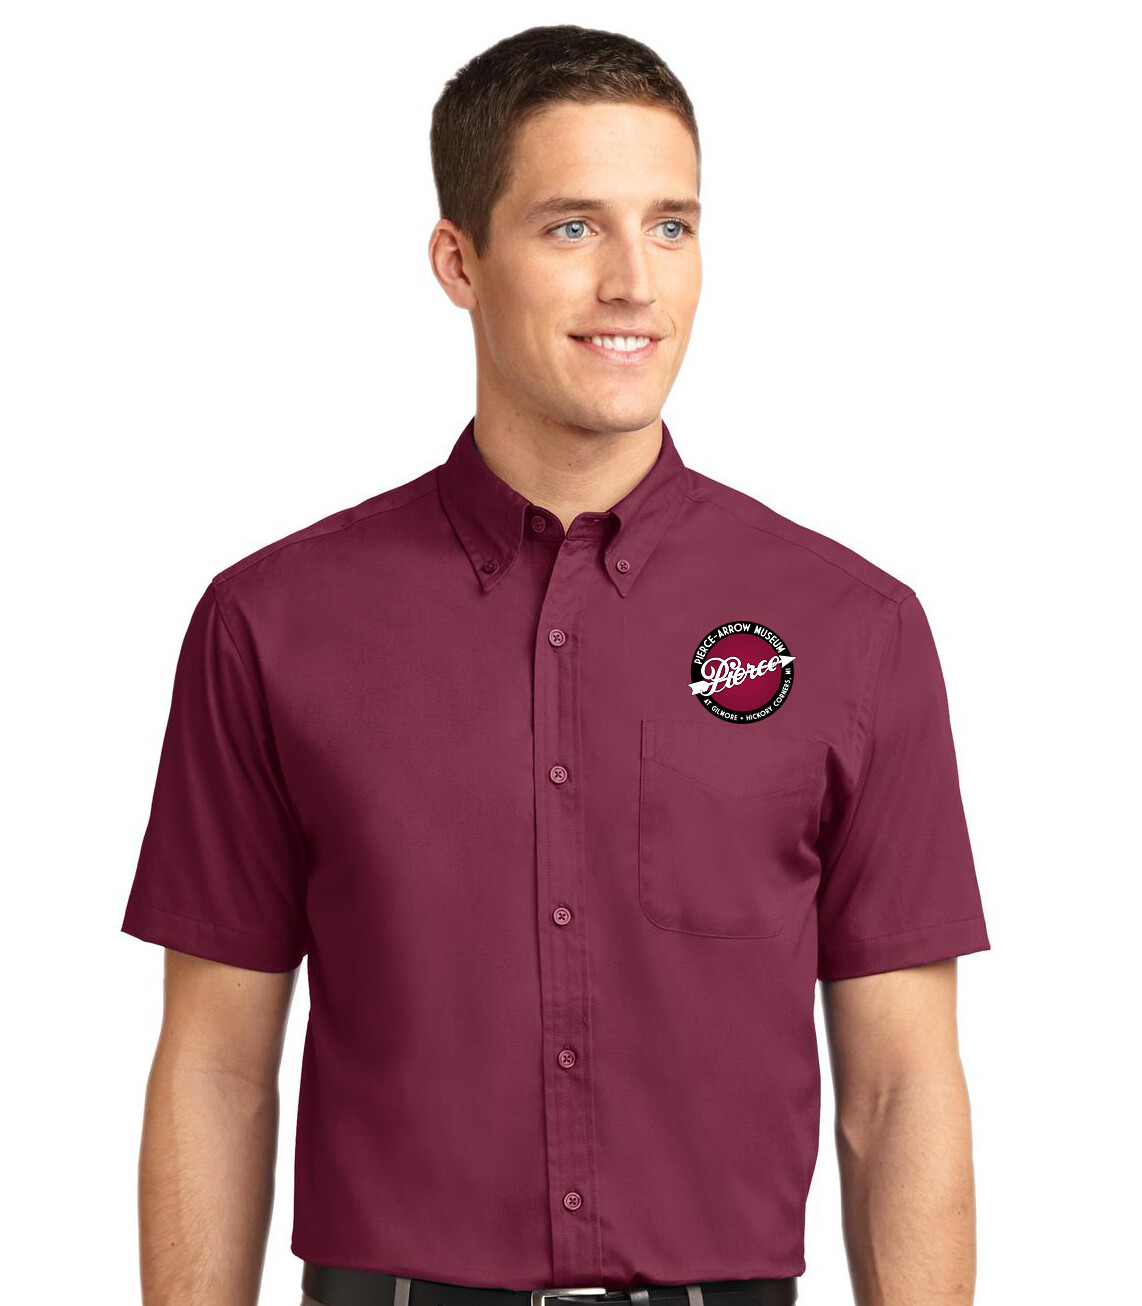 Pierce-Arrow Museum Men's Short Sleeve Dress Shirt with pocket